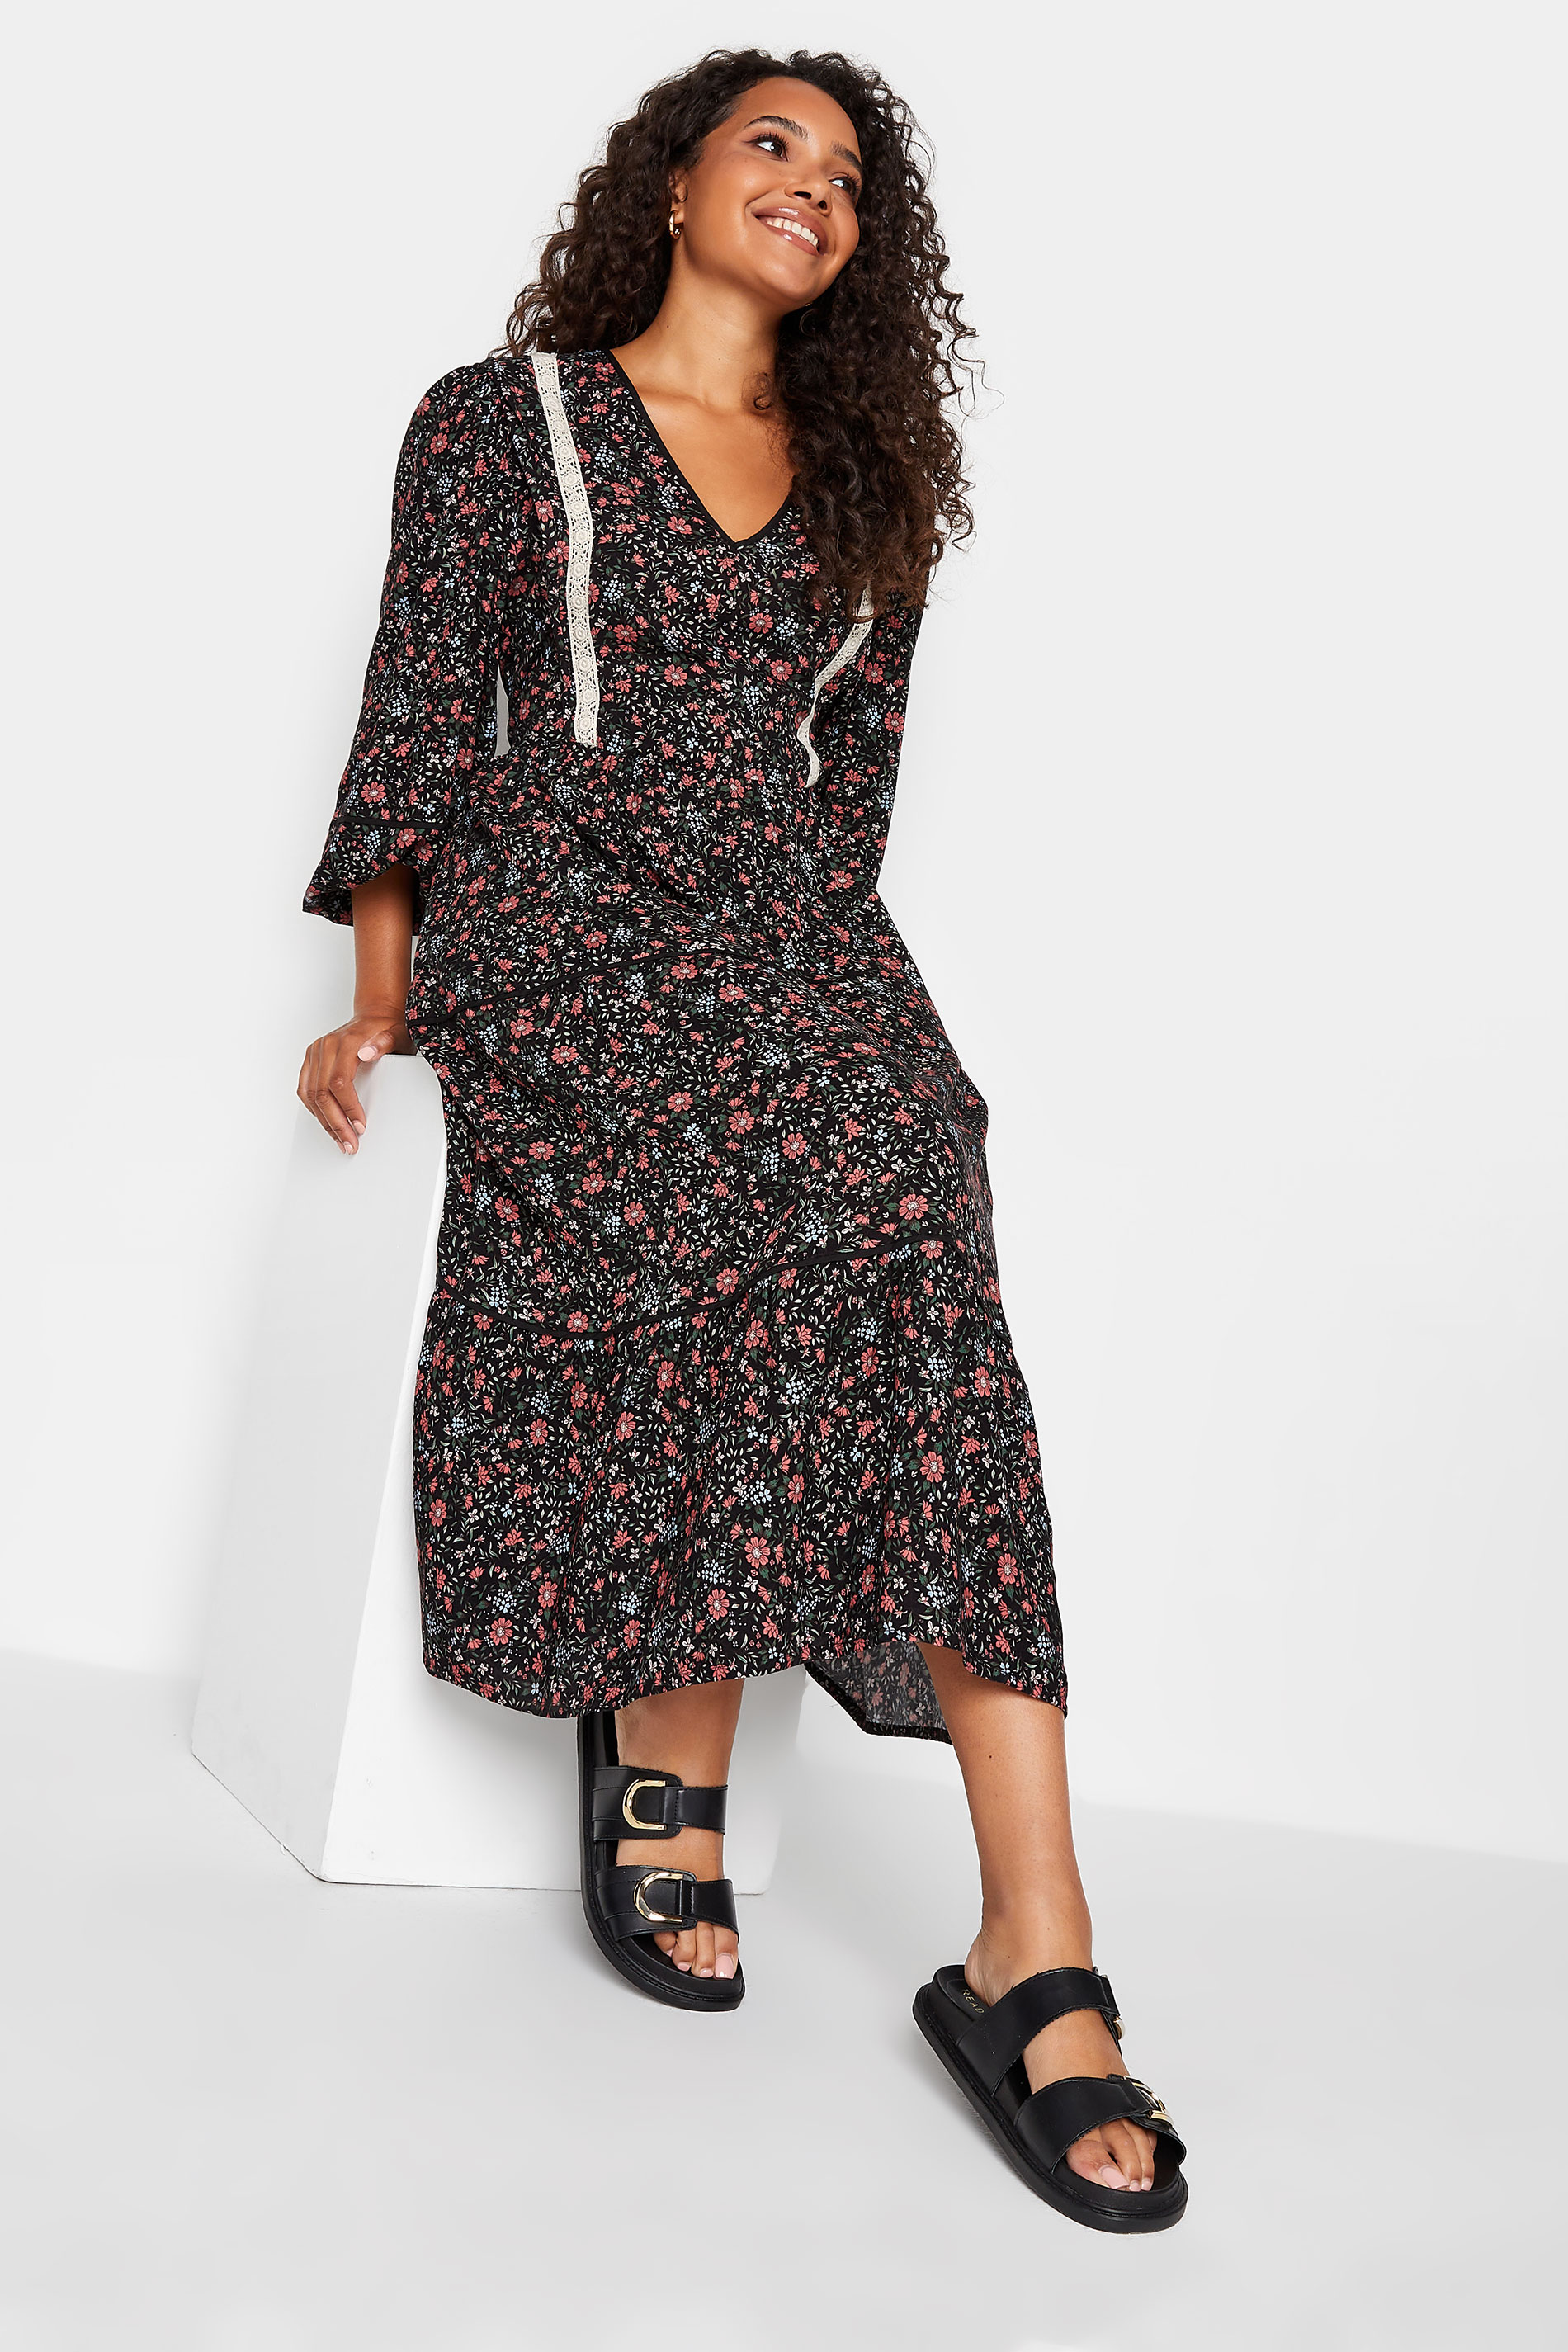 M&Co Black Floral Print Crochet Trim Maxi Dress | M&Co 2